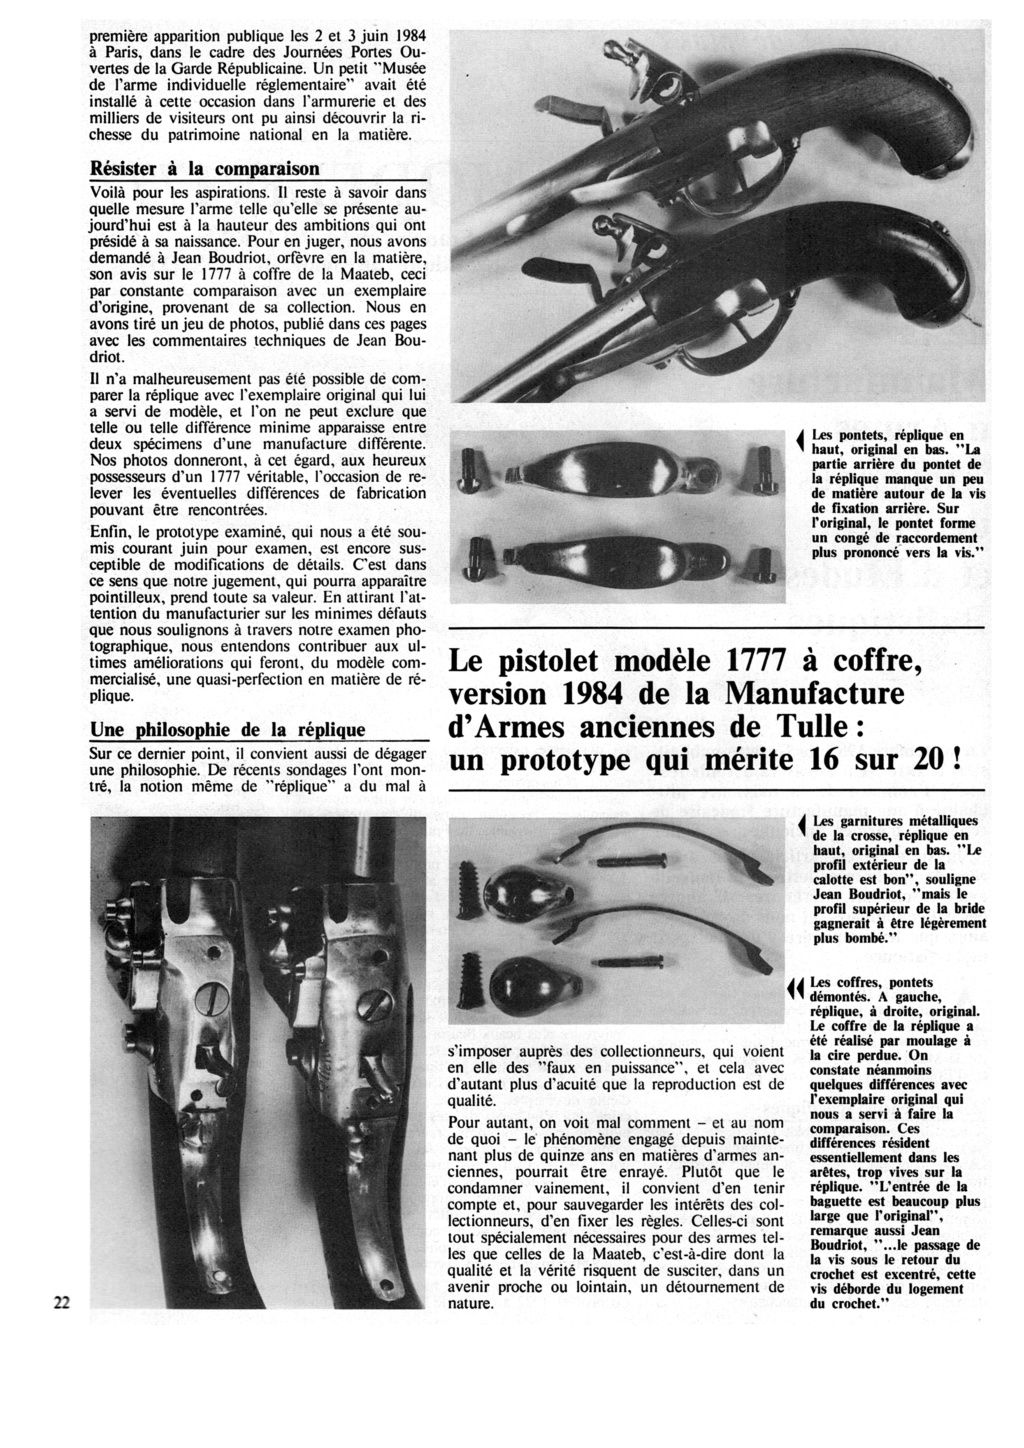 Pistolet 1777 MAATEB - Page 3 Maa-0510